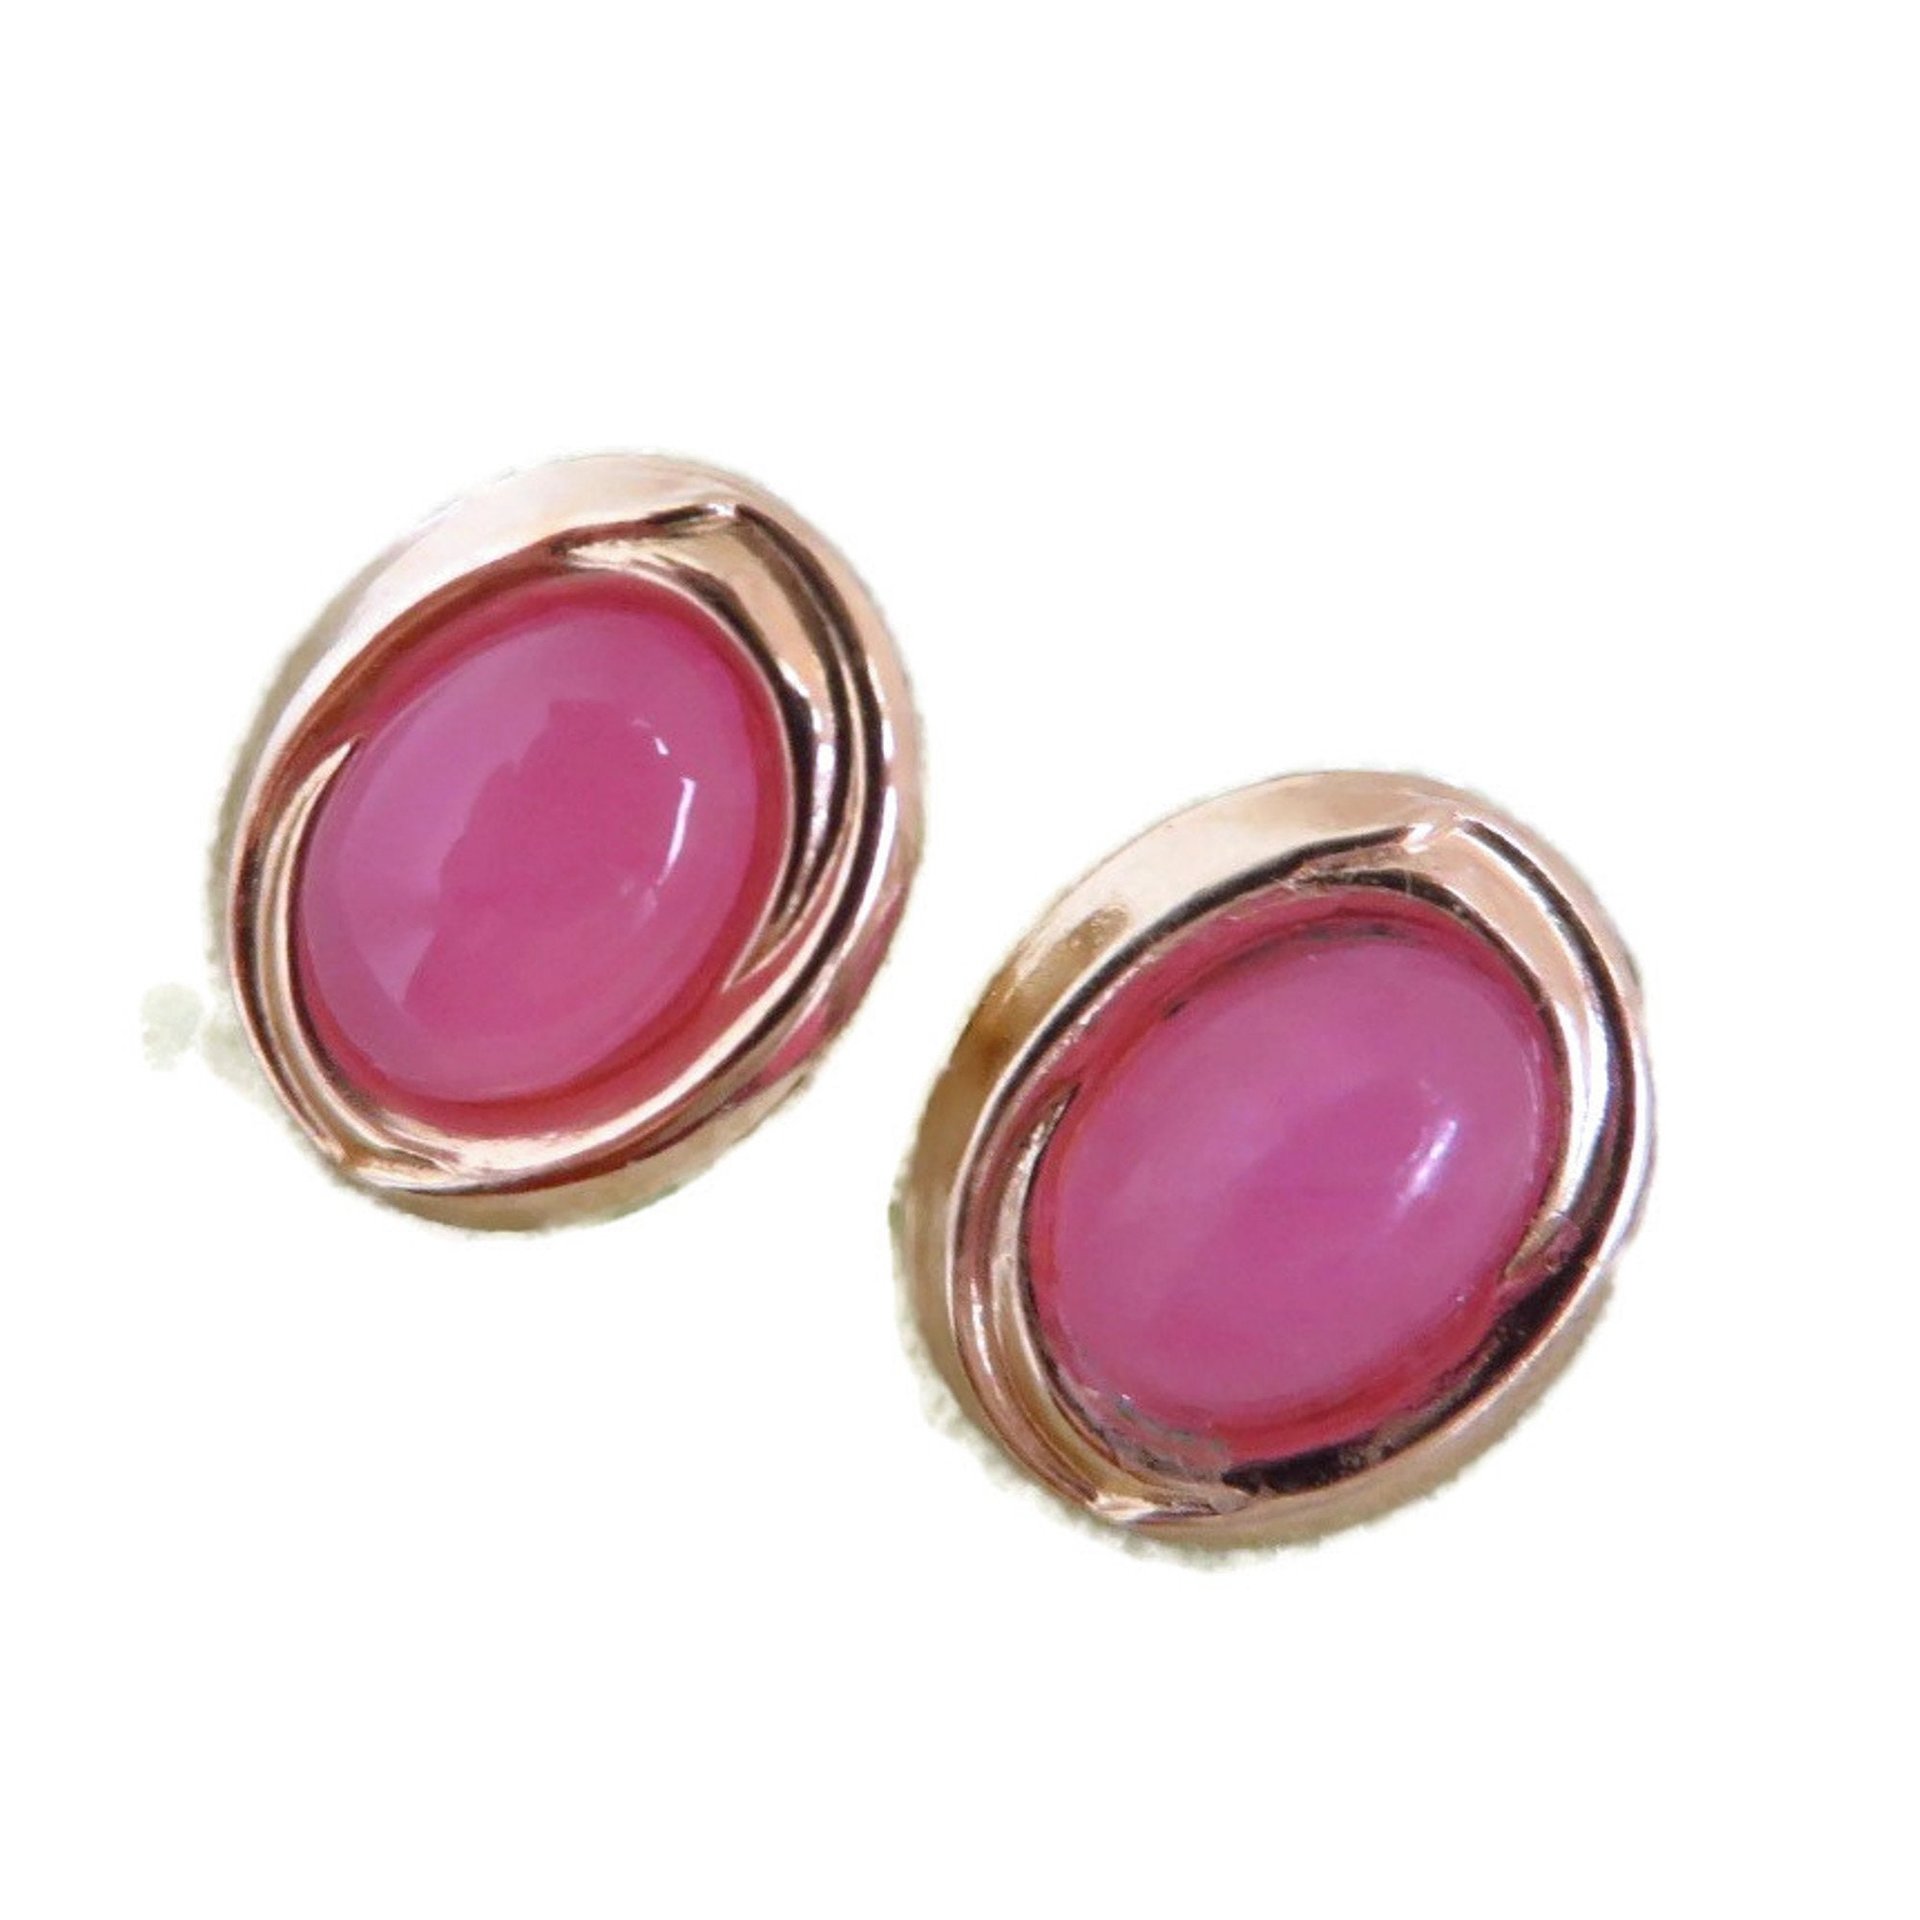 14K Gold Pink Quartz Pierced Stud Earrings